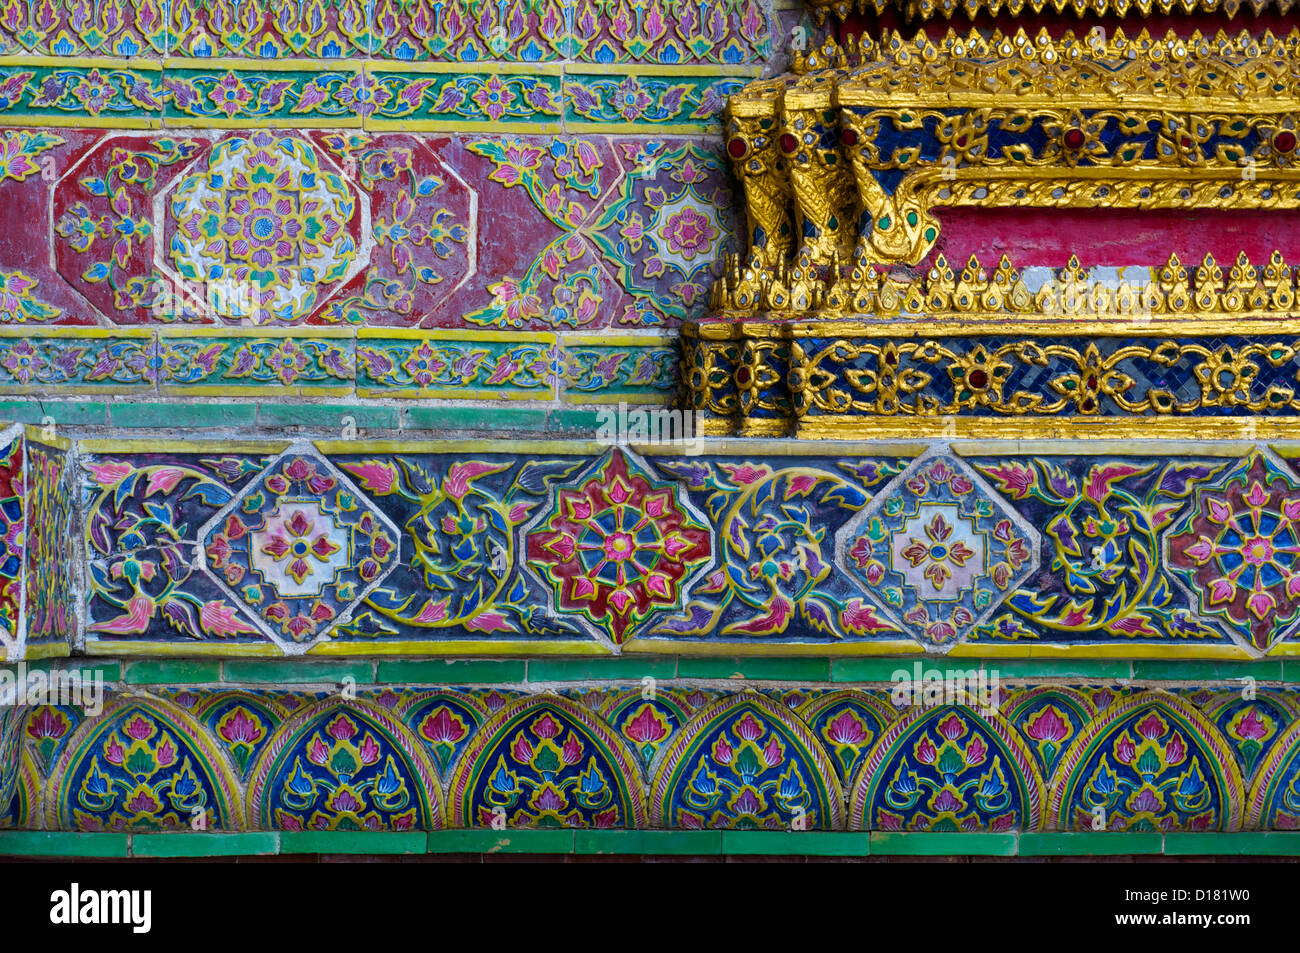 Les carreaux de céramique d'art et de la feuille d'or sur le visage de temples, le Grand Palace Bangkok Thaïlande Banque D'Images